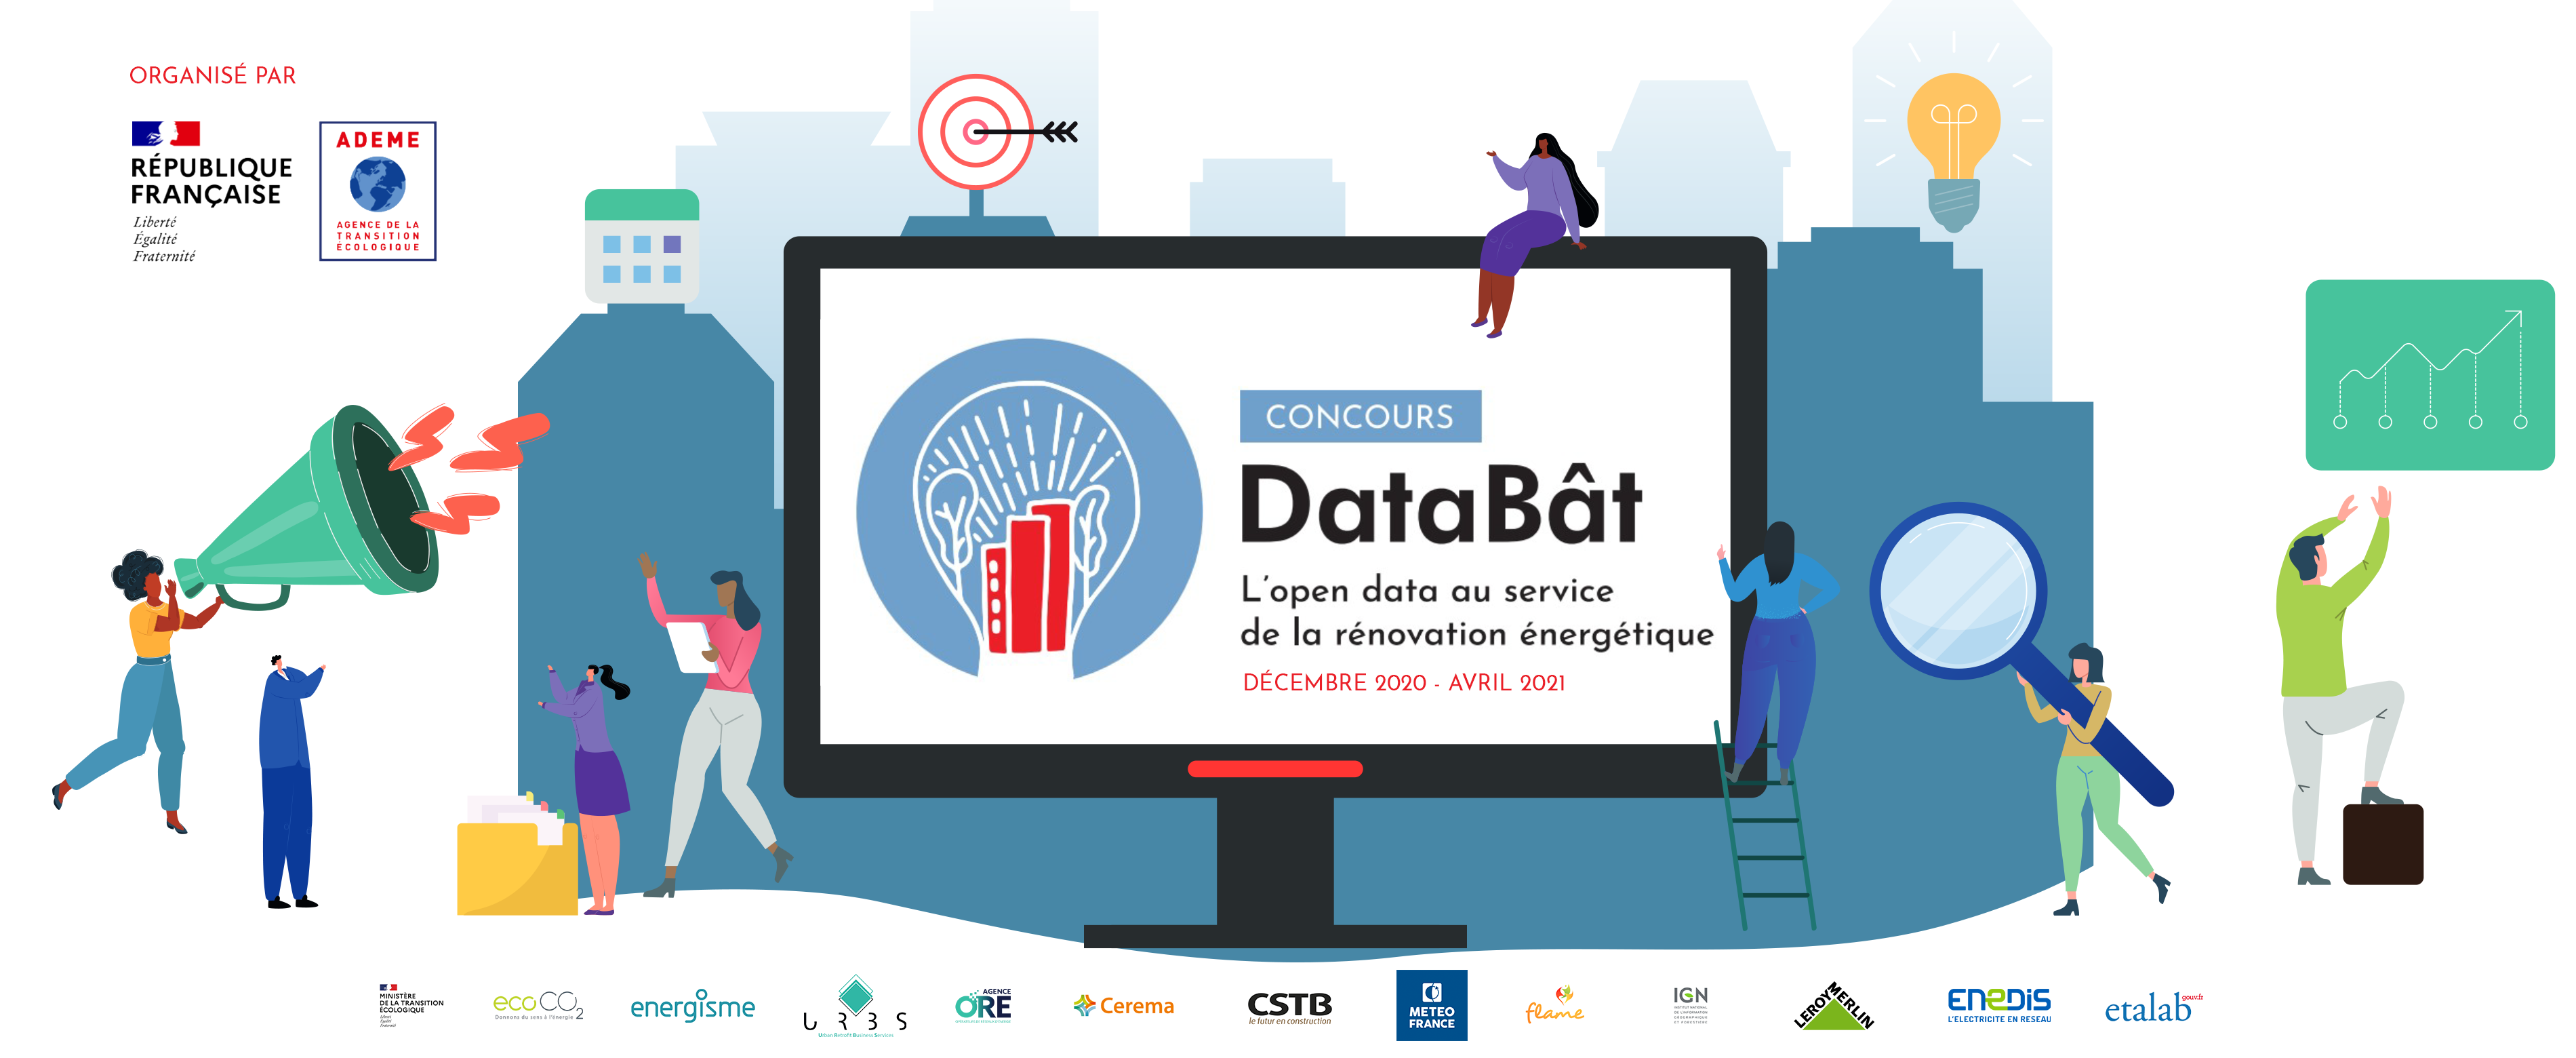 Concours DataBât - Décembre 2020 à Avril 2021 - opendata ...